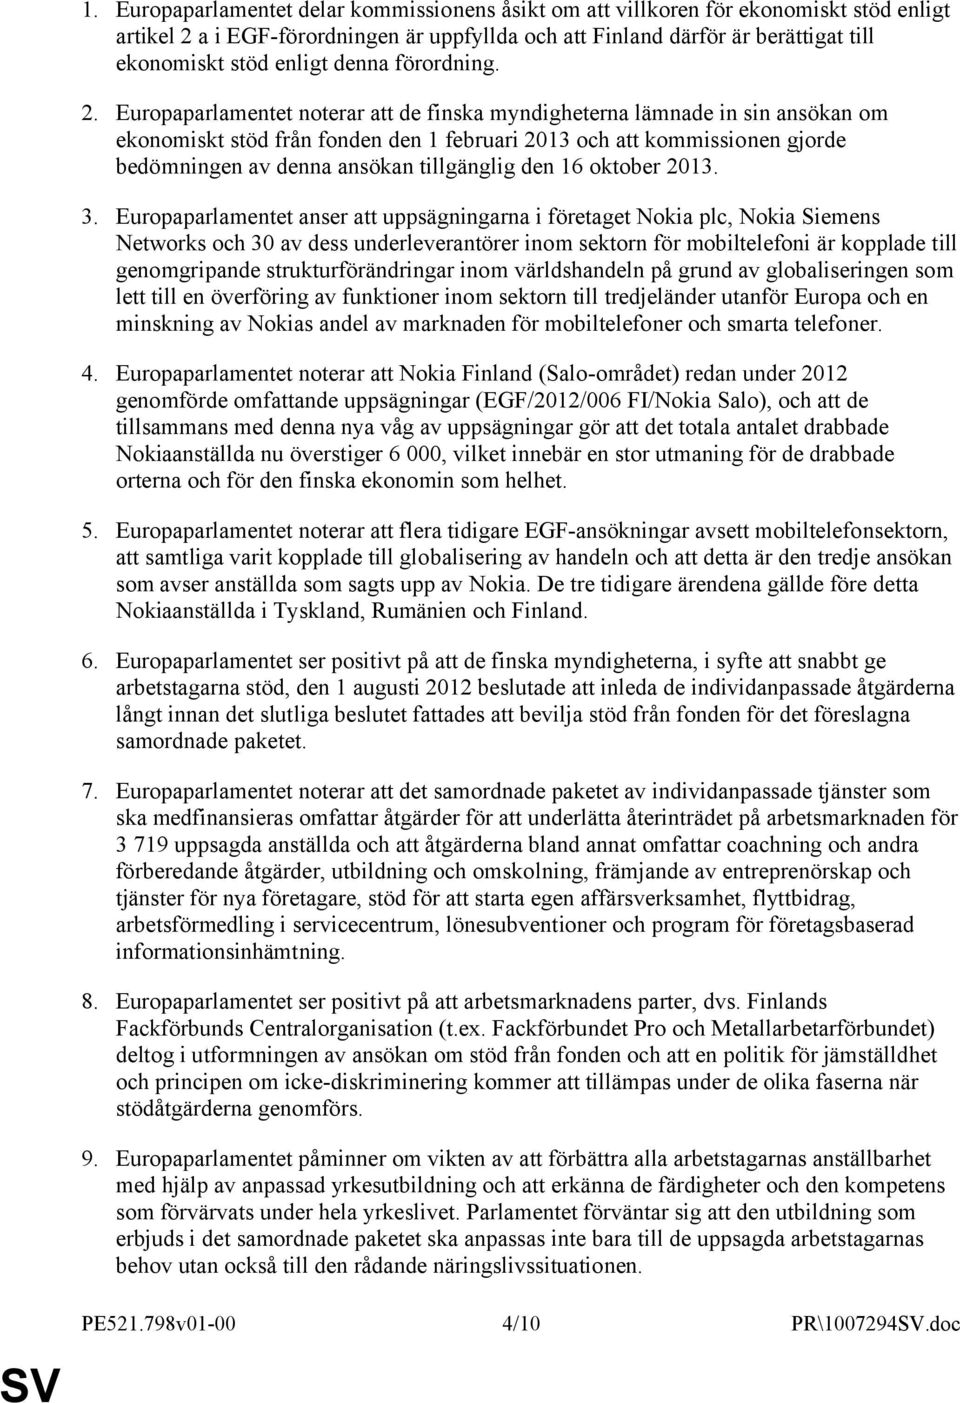 Europaparlamentet noterar att de finska myndigheterna lämnade in sin ansökan om ekonomiskt stöd från fonden den 1 februari 2013 och att kommissionen gjorde bedömningen av denna ansökan tillgänglig